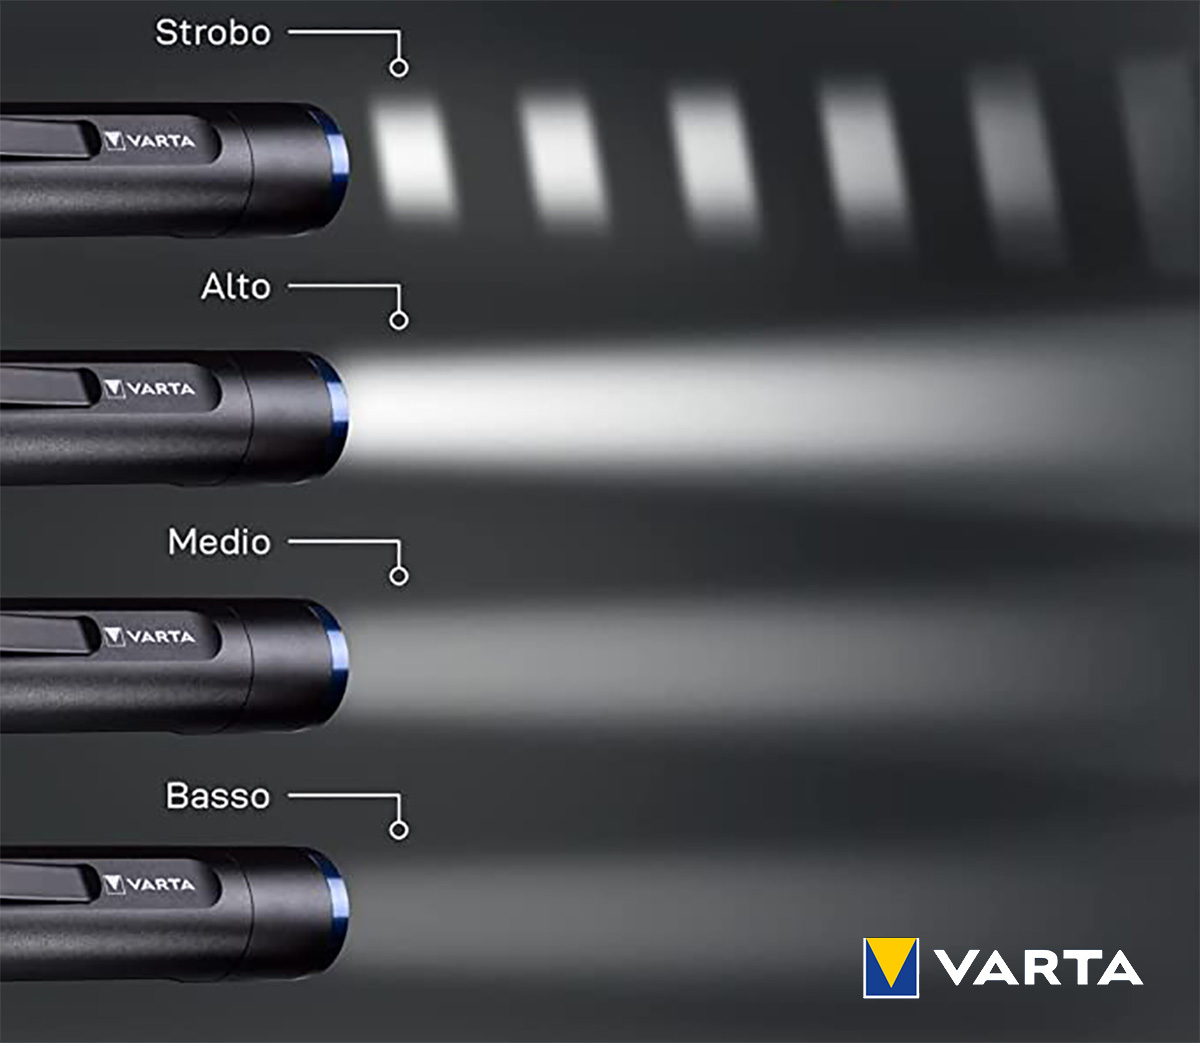 Una immagine mostra i quattro livelli di illuminazione della Varta F20R